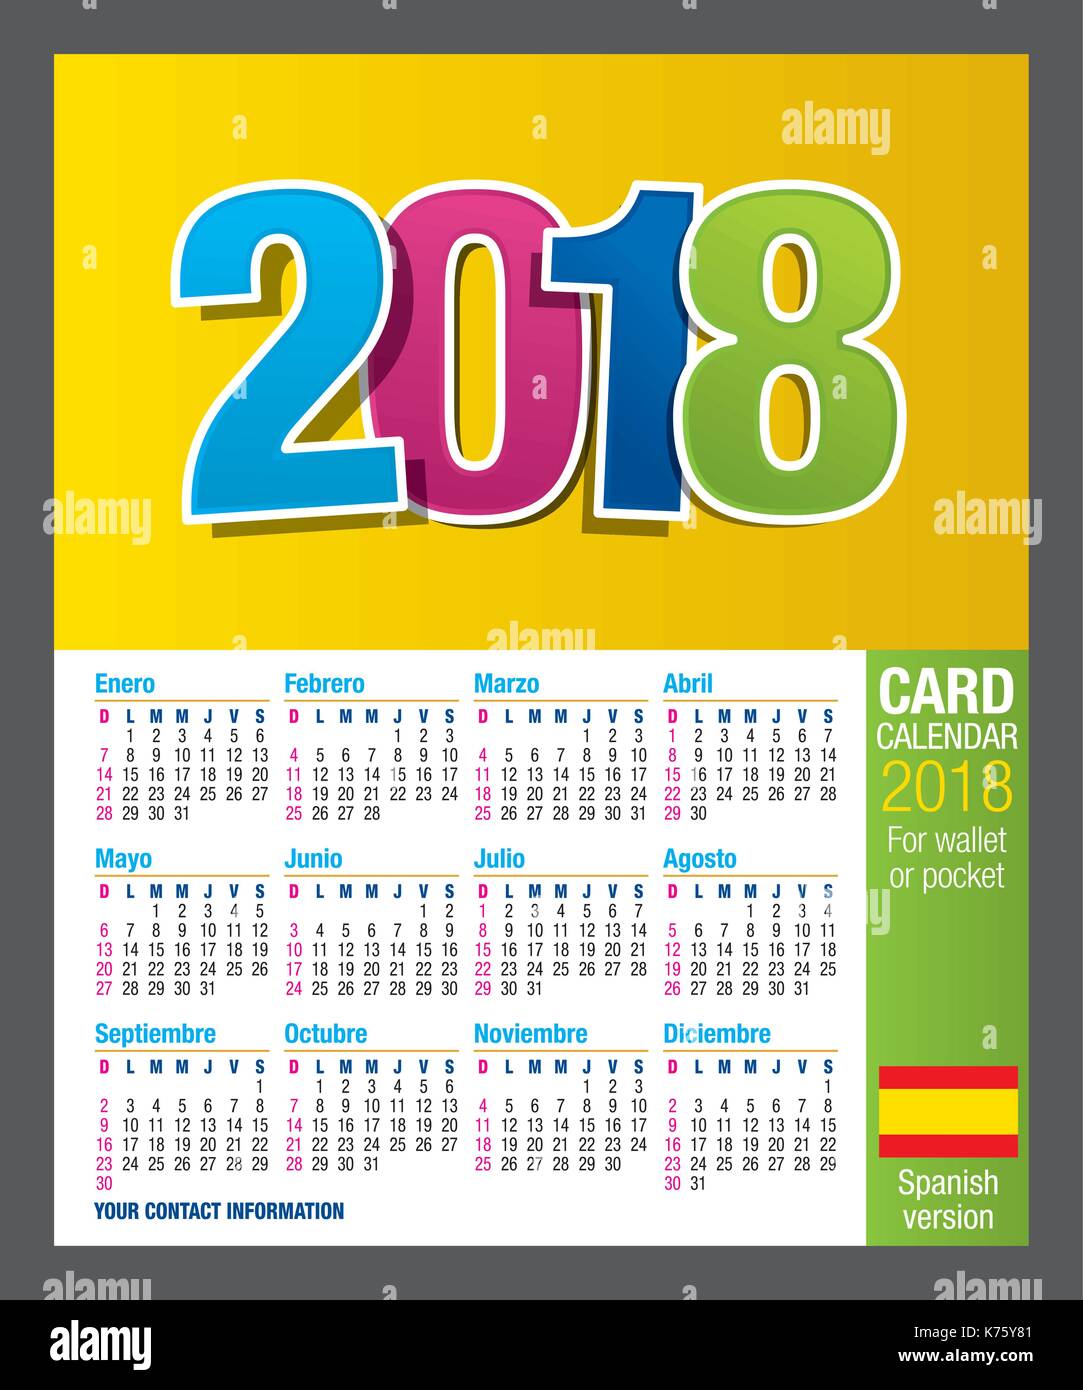 Nützliche zweiseitige Karte Kalender 2018 für Brieftasche oder in der  Tasche, die in voller Farbe. Größe: 9 cm x 5,5 cm. Spanische Version  Stock-Vektorgrafik - Alamy